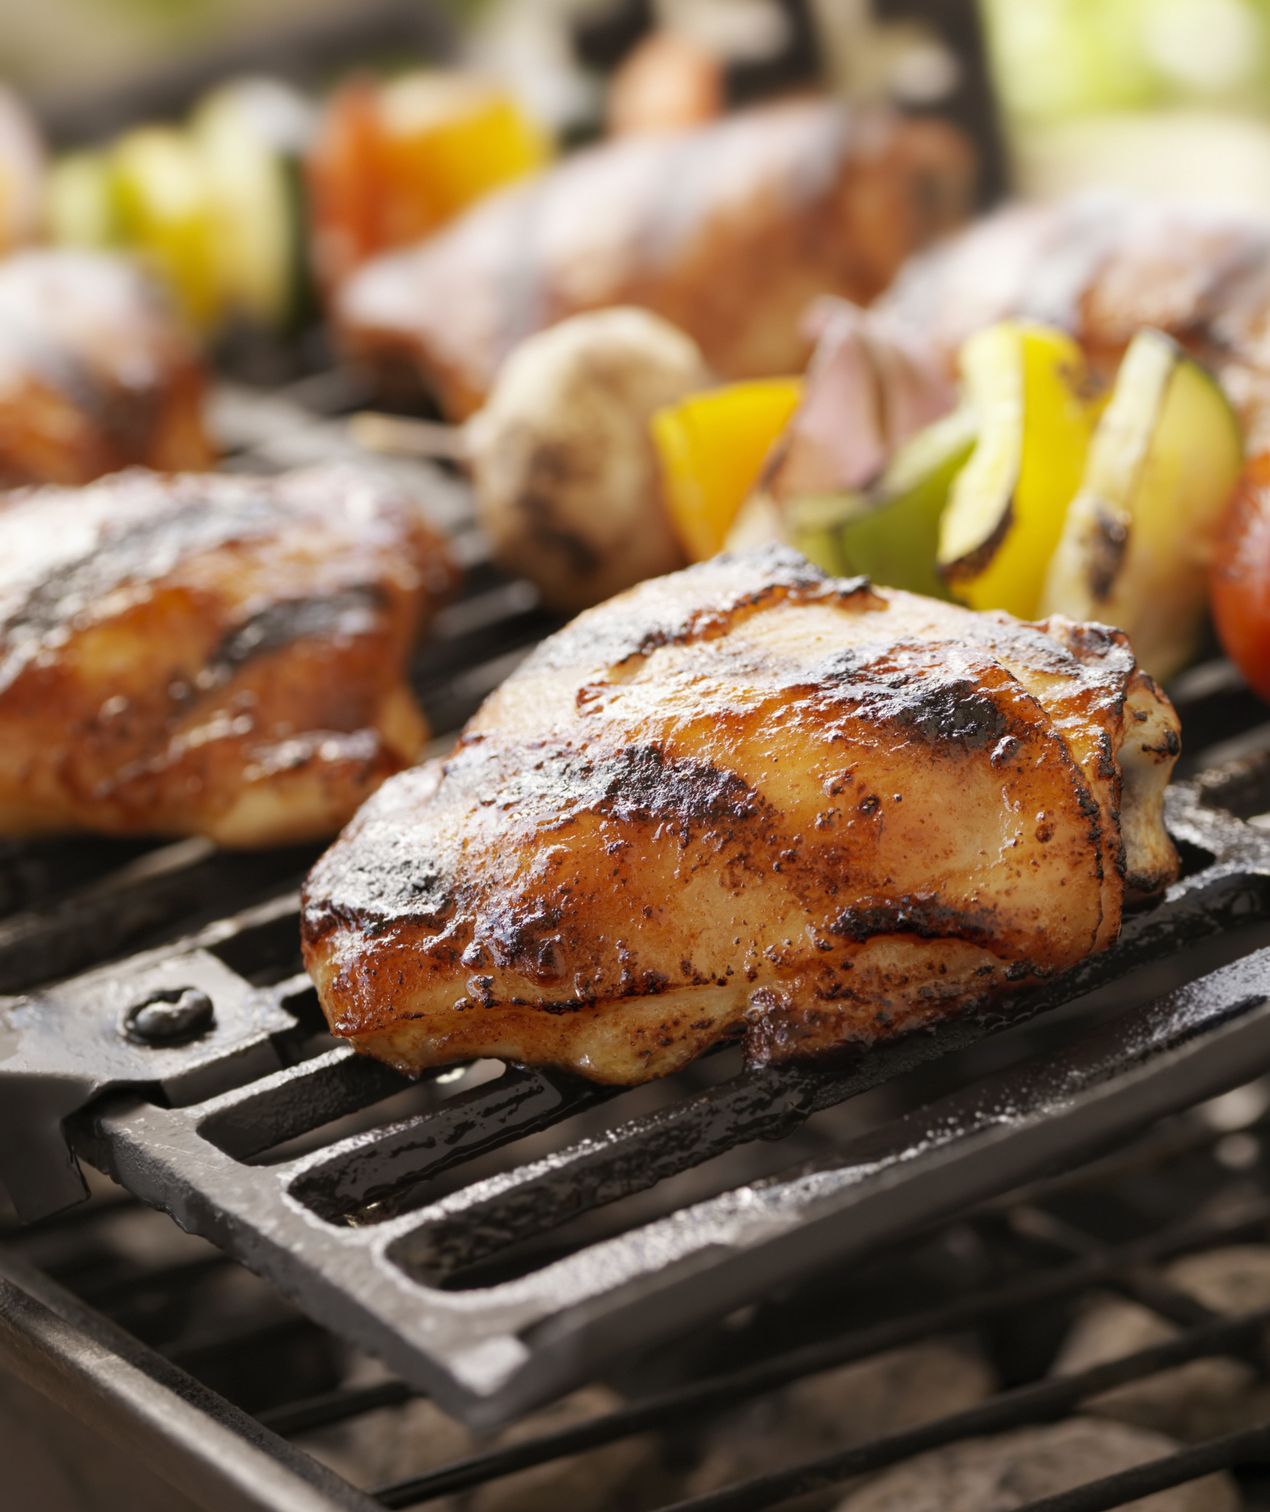 Cuisses de poulet et brochettes sur grill